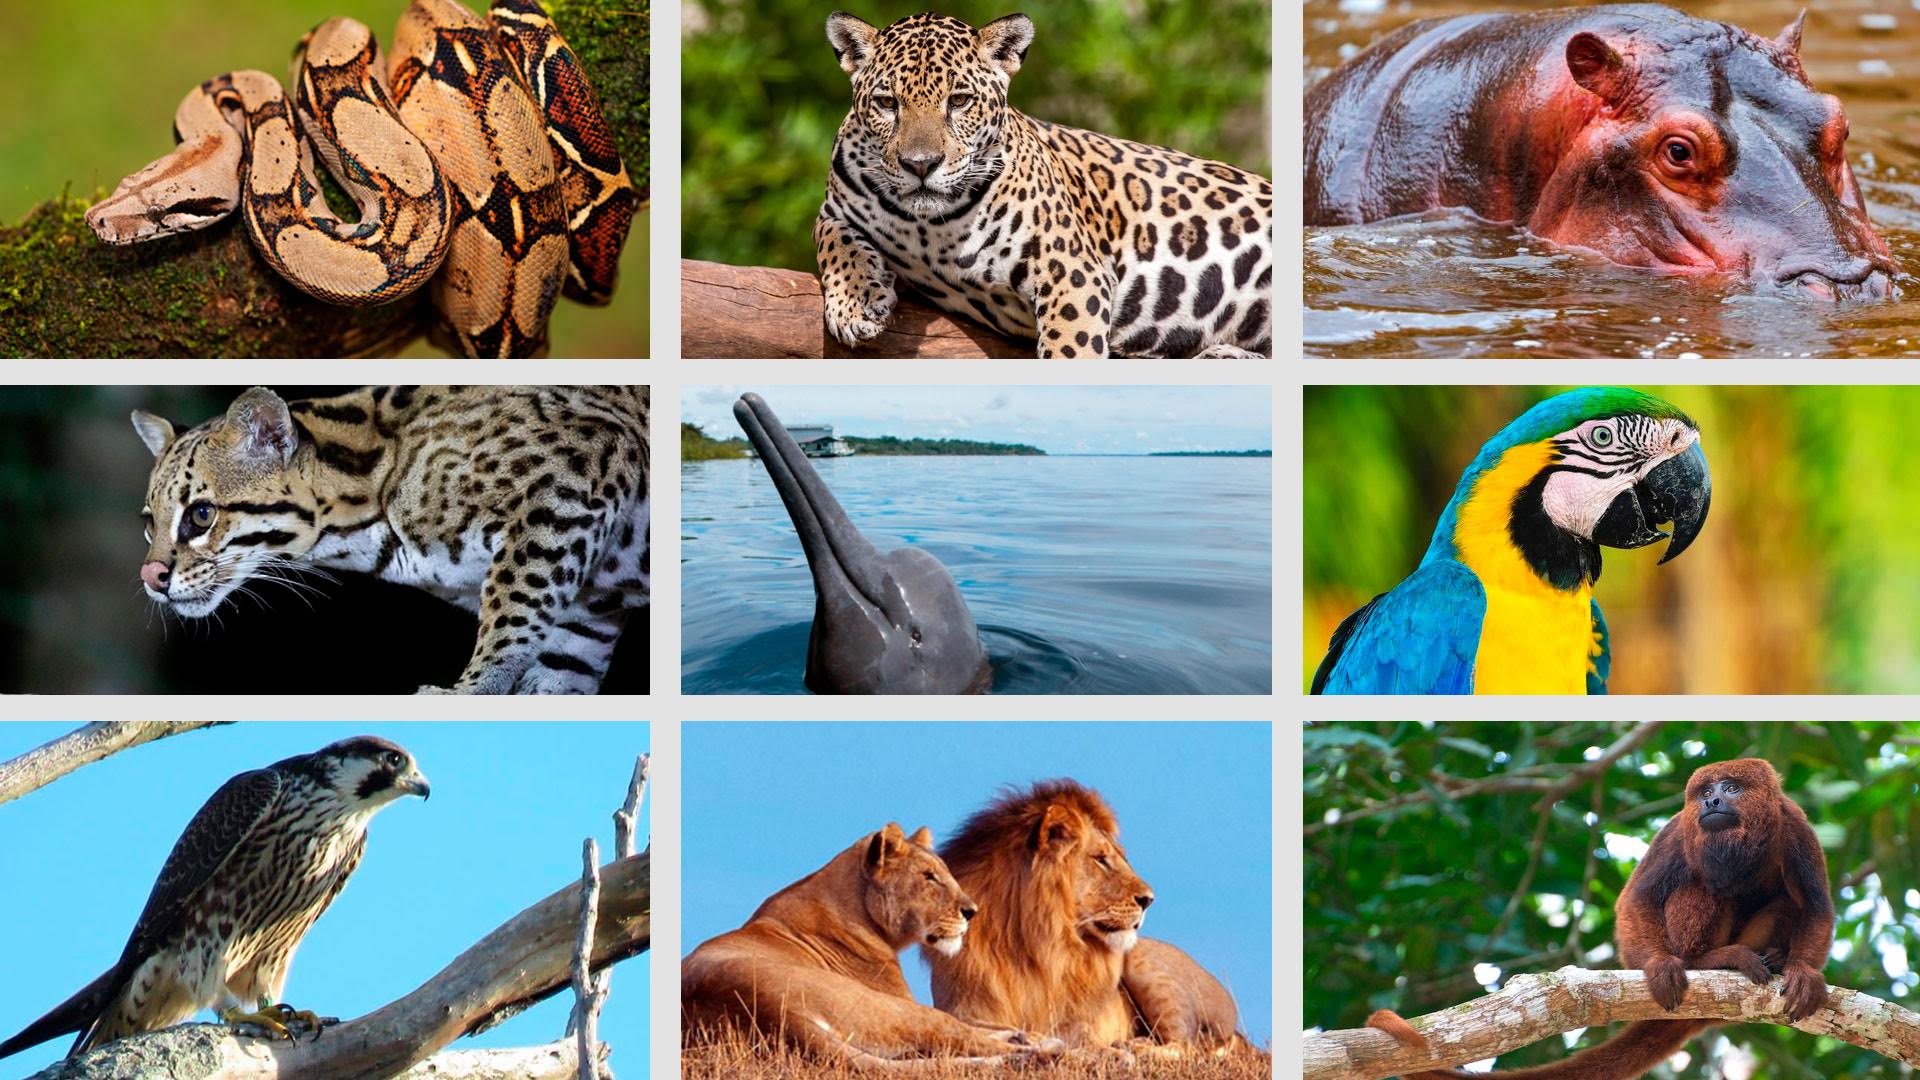 12 imagens incríveis da vida selvagem que concorrem a prêmio de fotografia  - Revista Galileu | Ciência